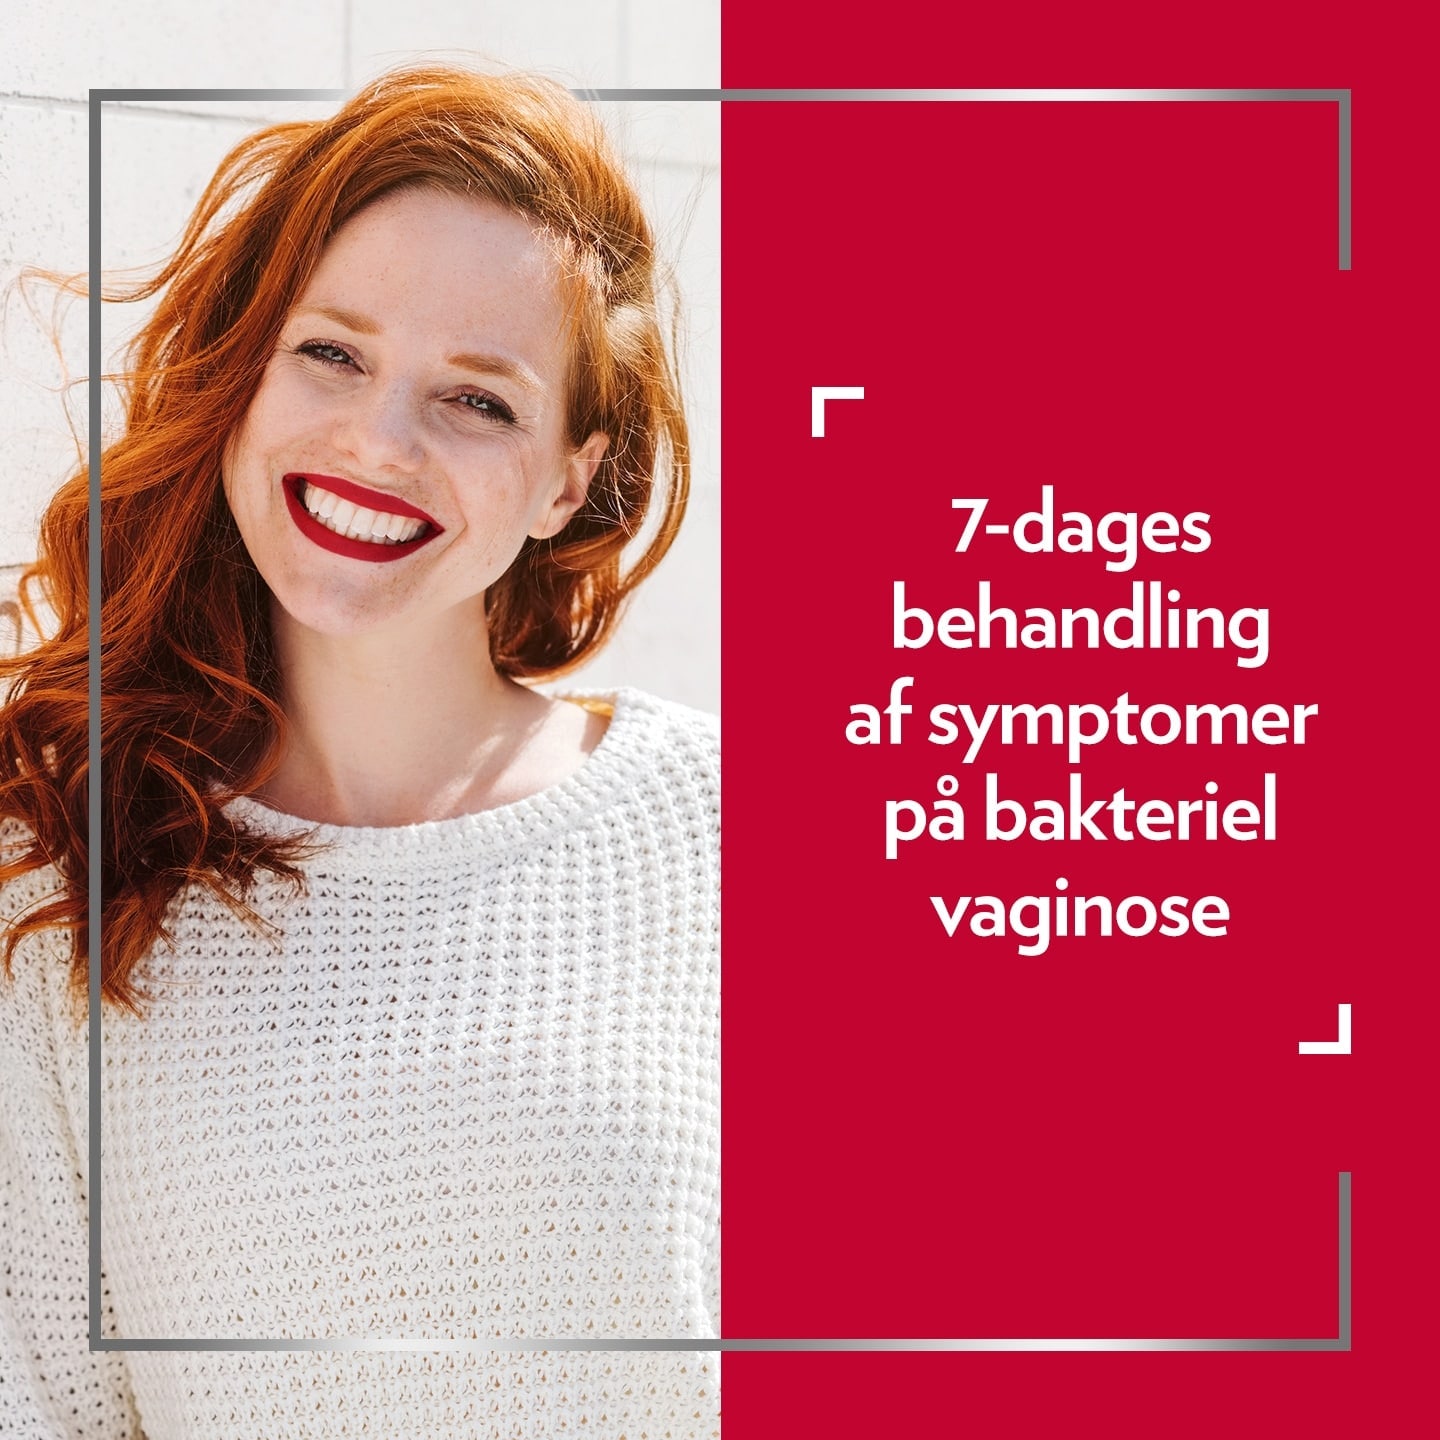 Smilende rødhåret kvinde, med billedtekst på højre side af billedet: 7-dages komplet kur til behandling af symptomer på bakteriel vaginose